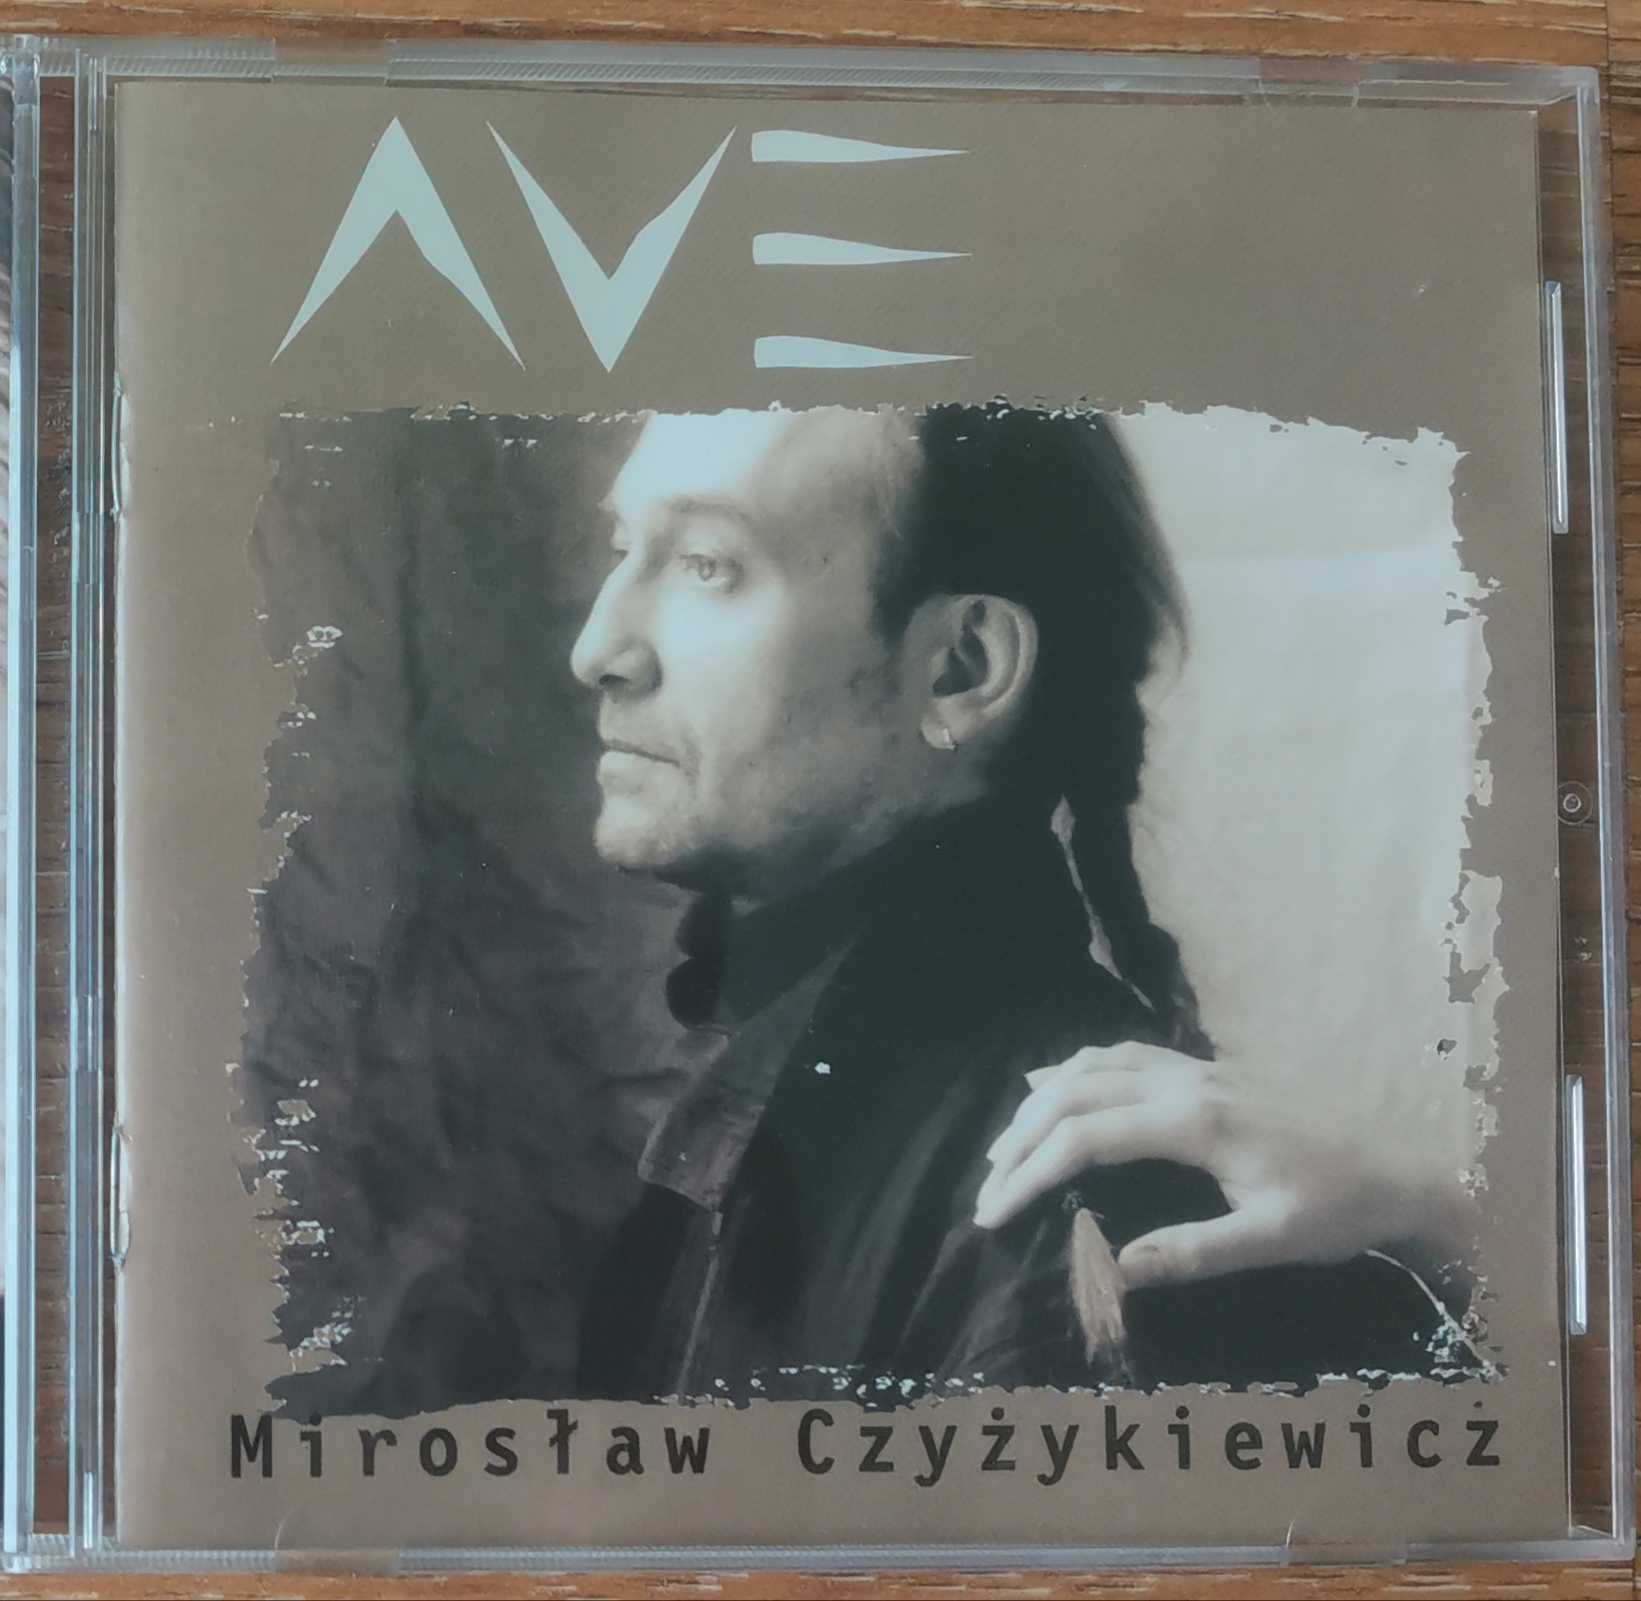 Mirosław Czyżykiewicz - Ave - Płyta CD